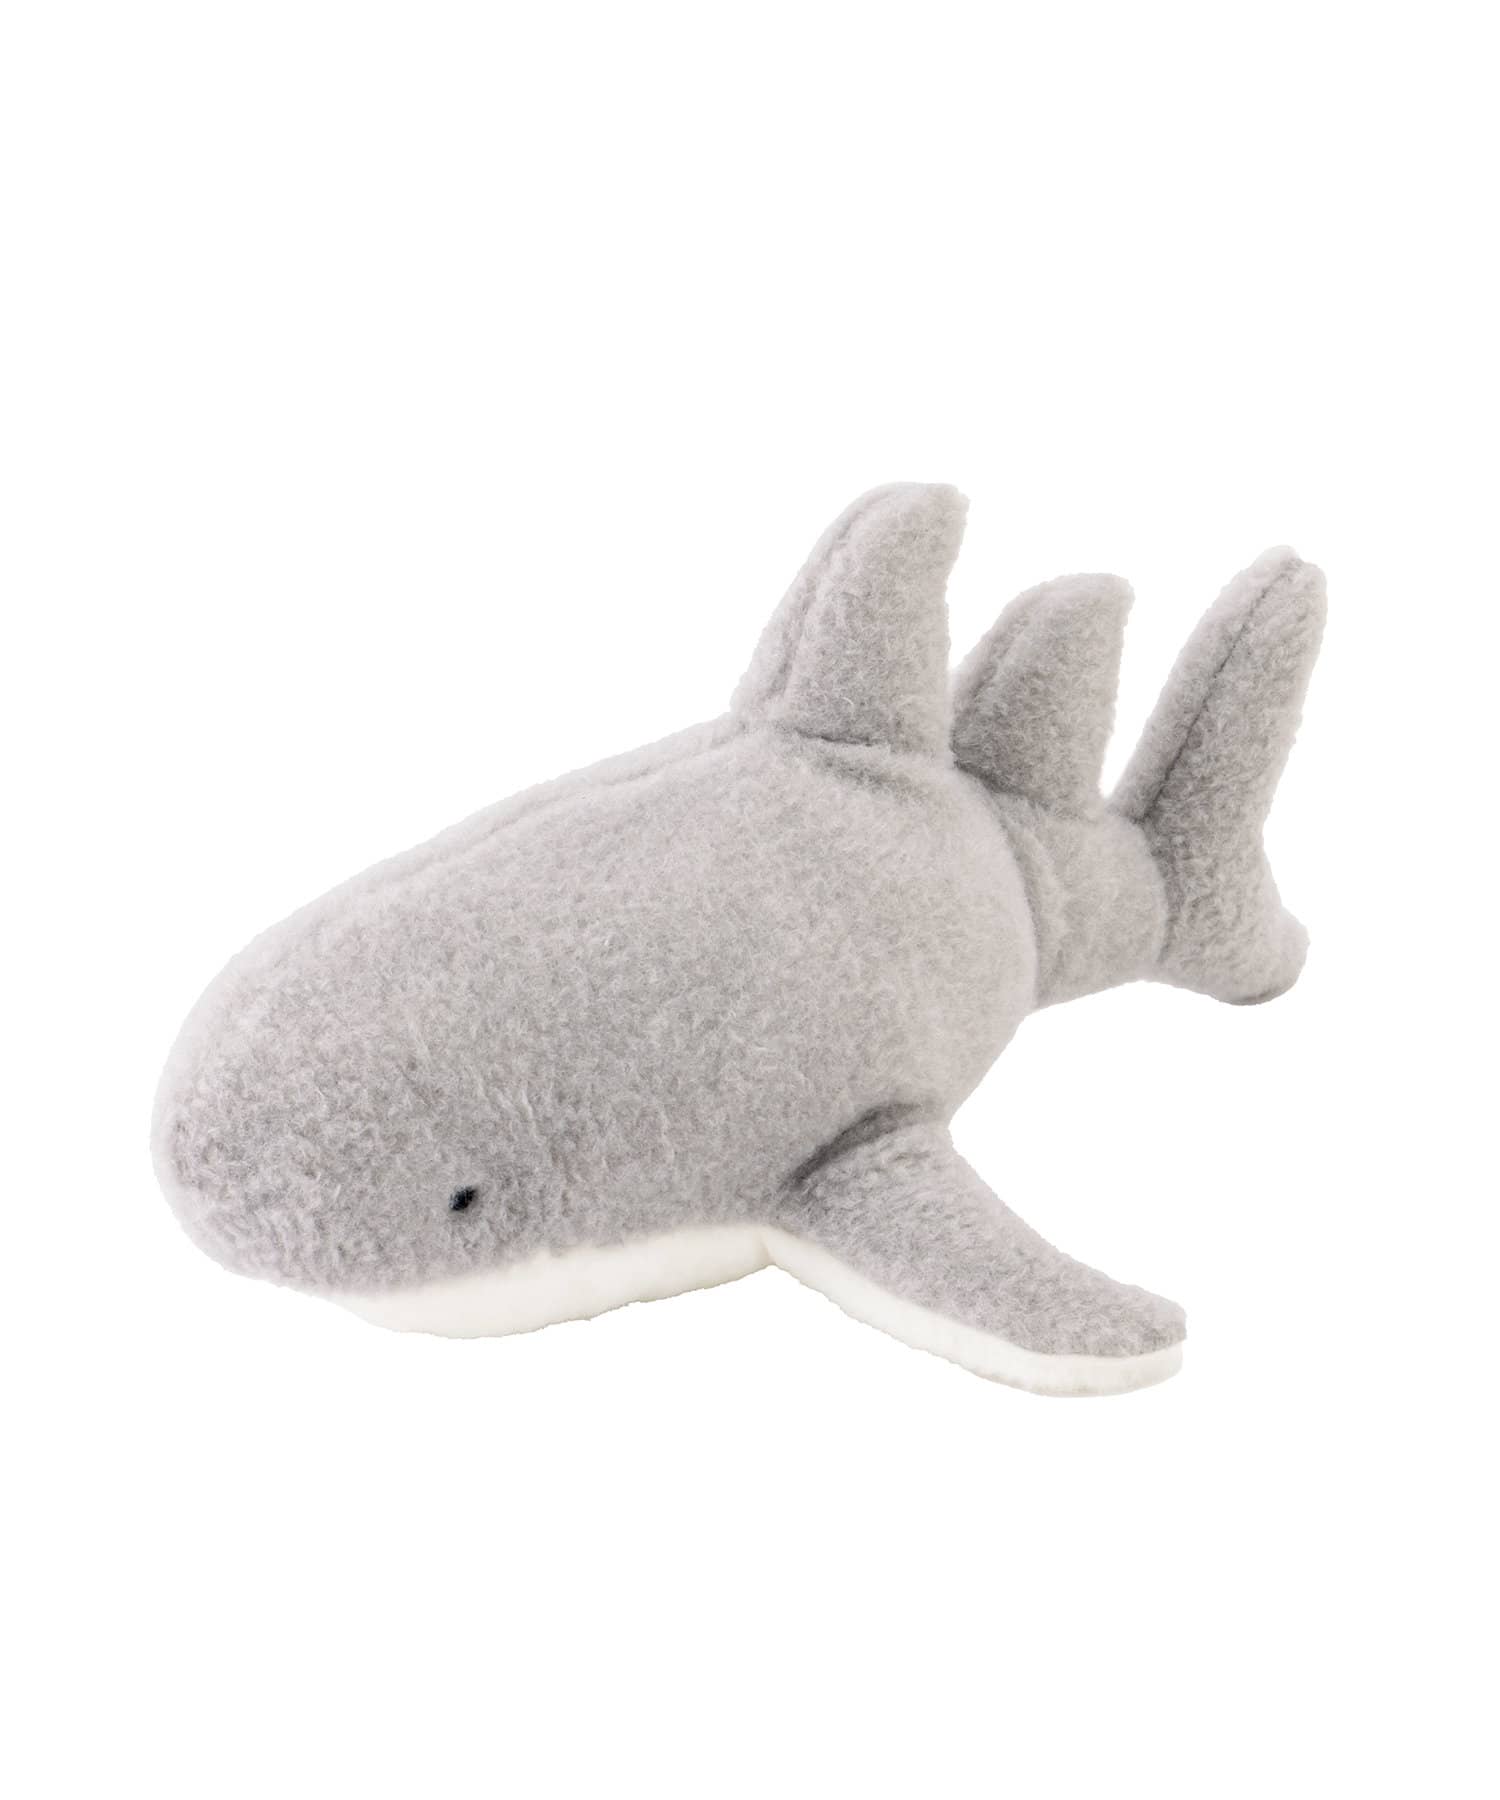 3COINS(スリーコインズ) サメのおもちゃ